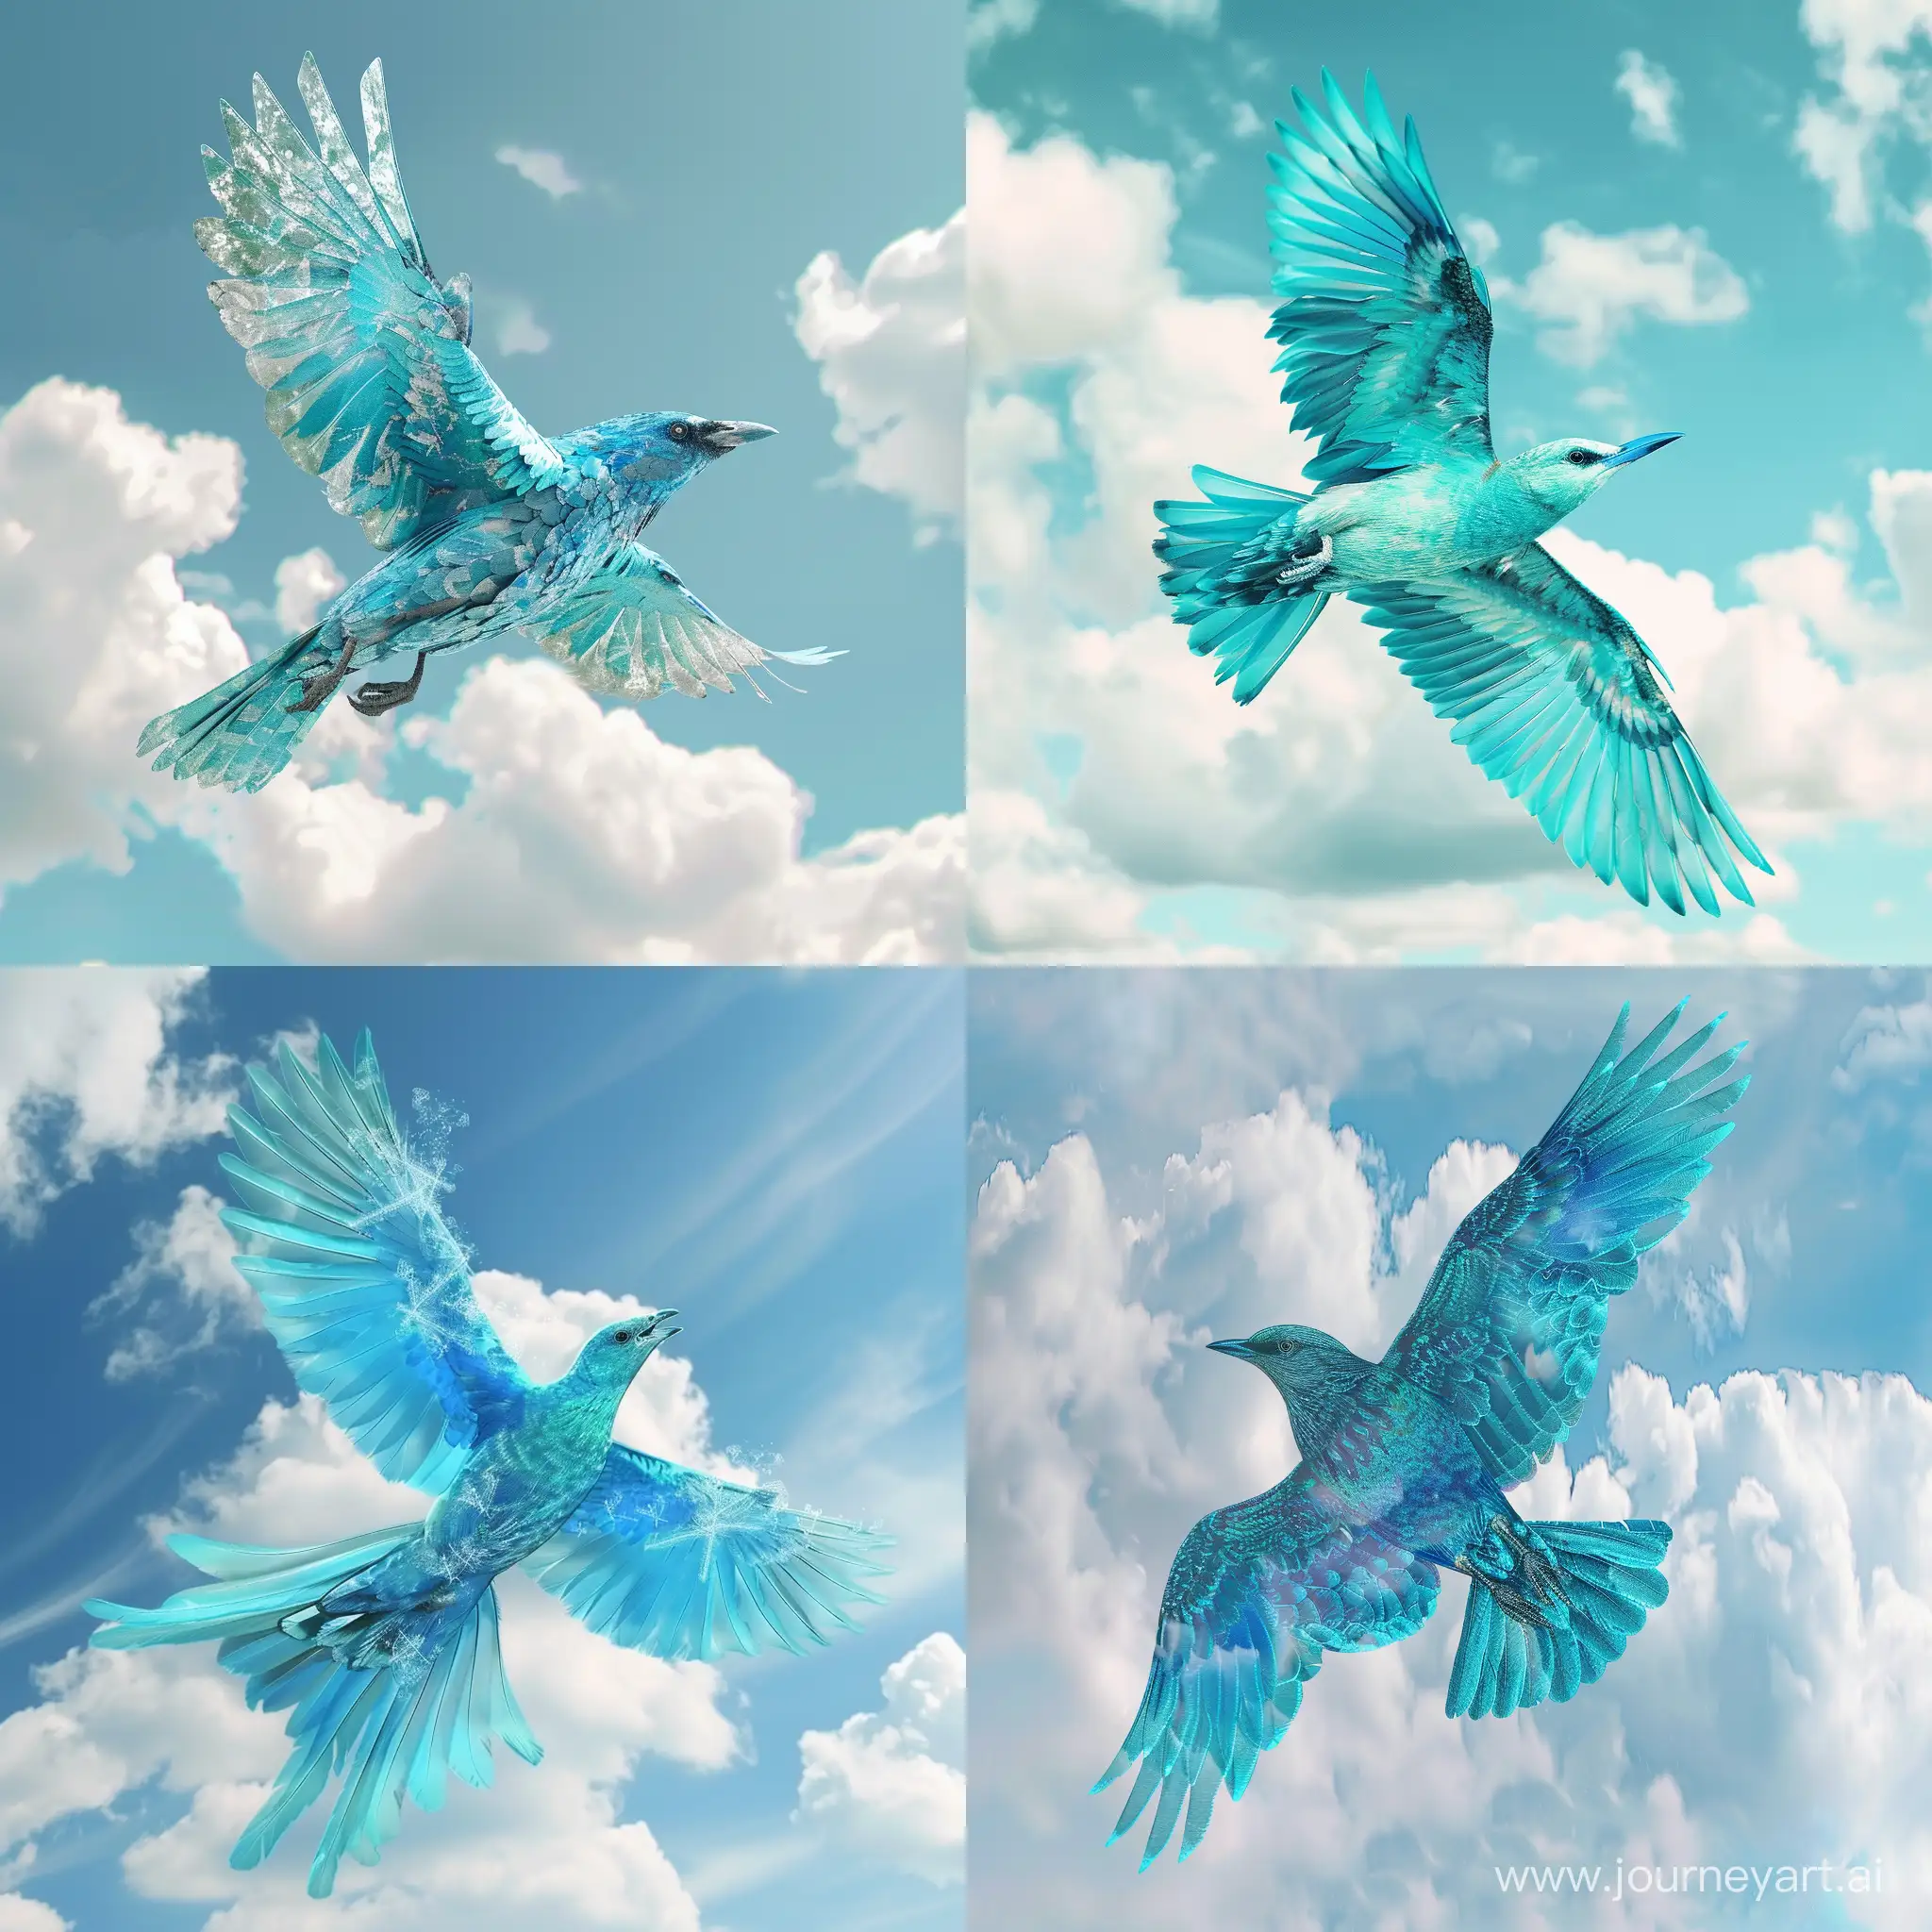 бирюзовая с синим  птица, летит в небе с облаками